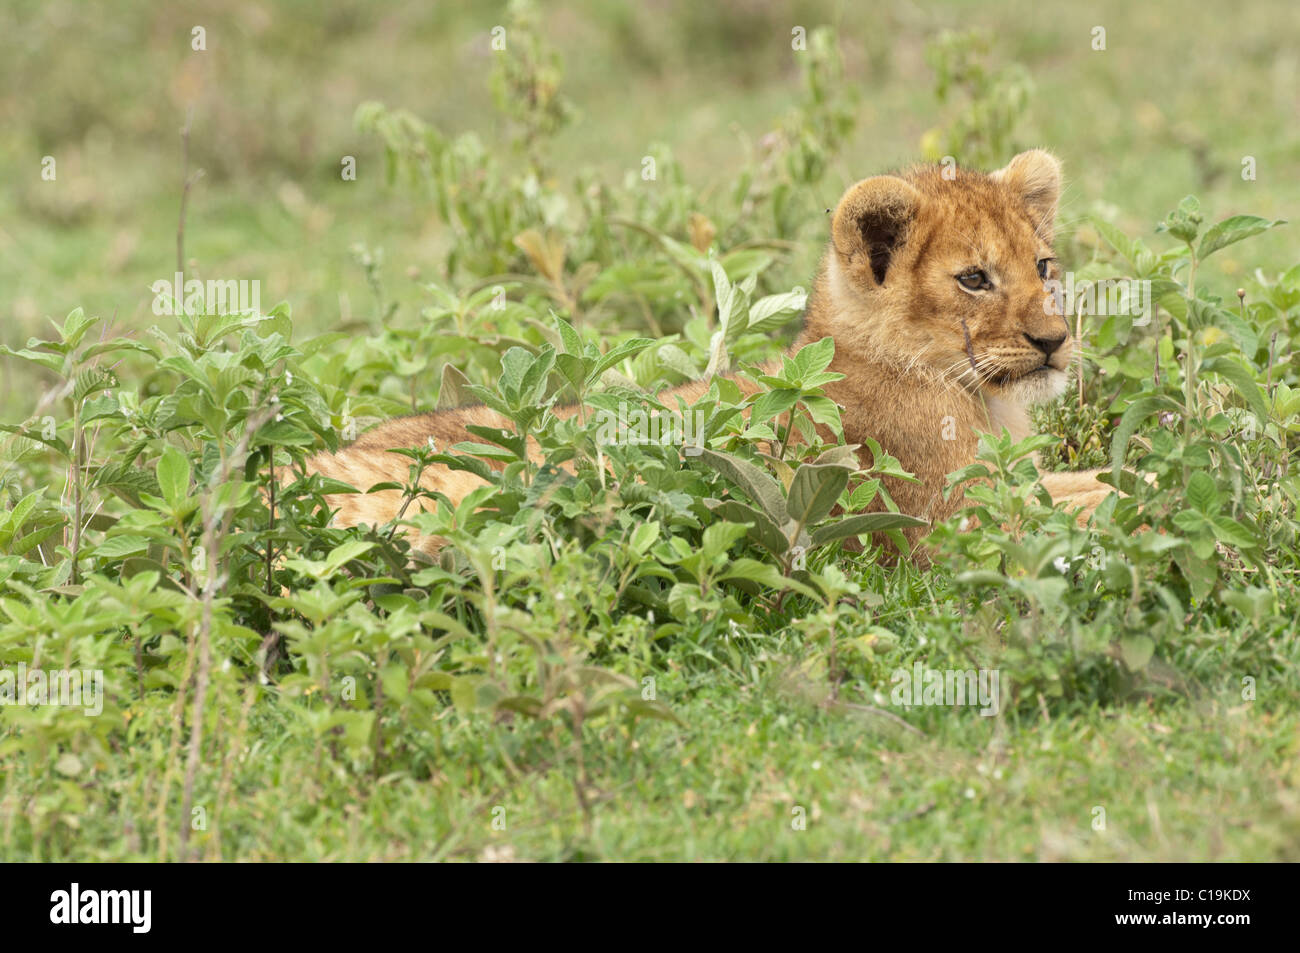 Stock Foto von ein Löwenjunges ruht in grüner Vegetation. Stockfoto